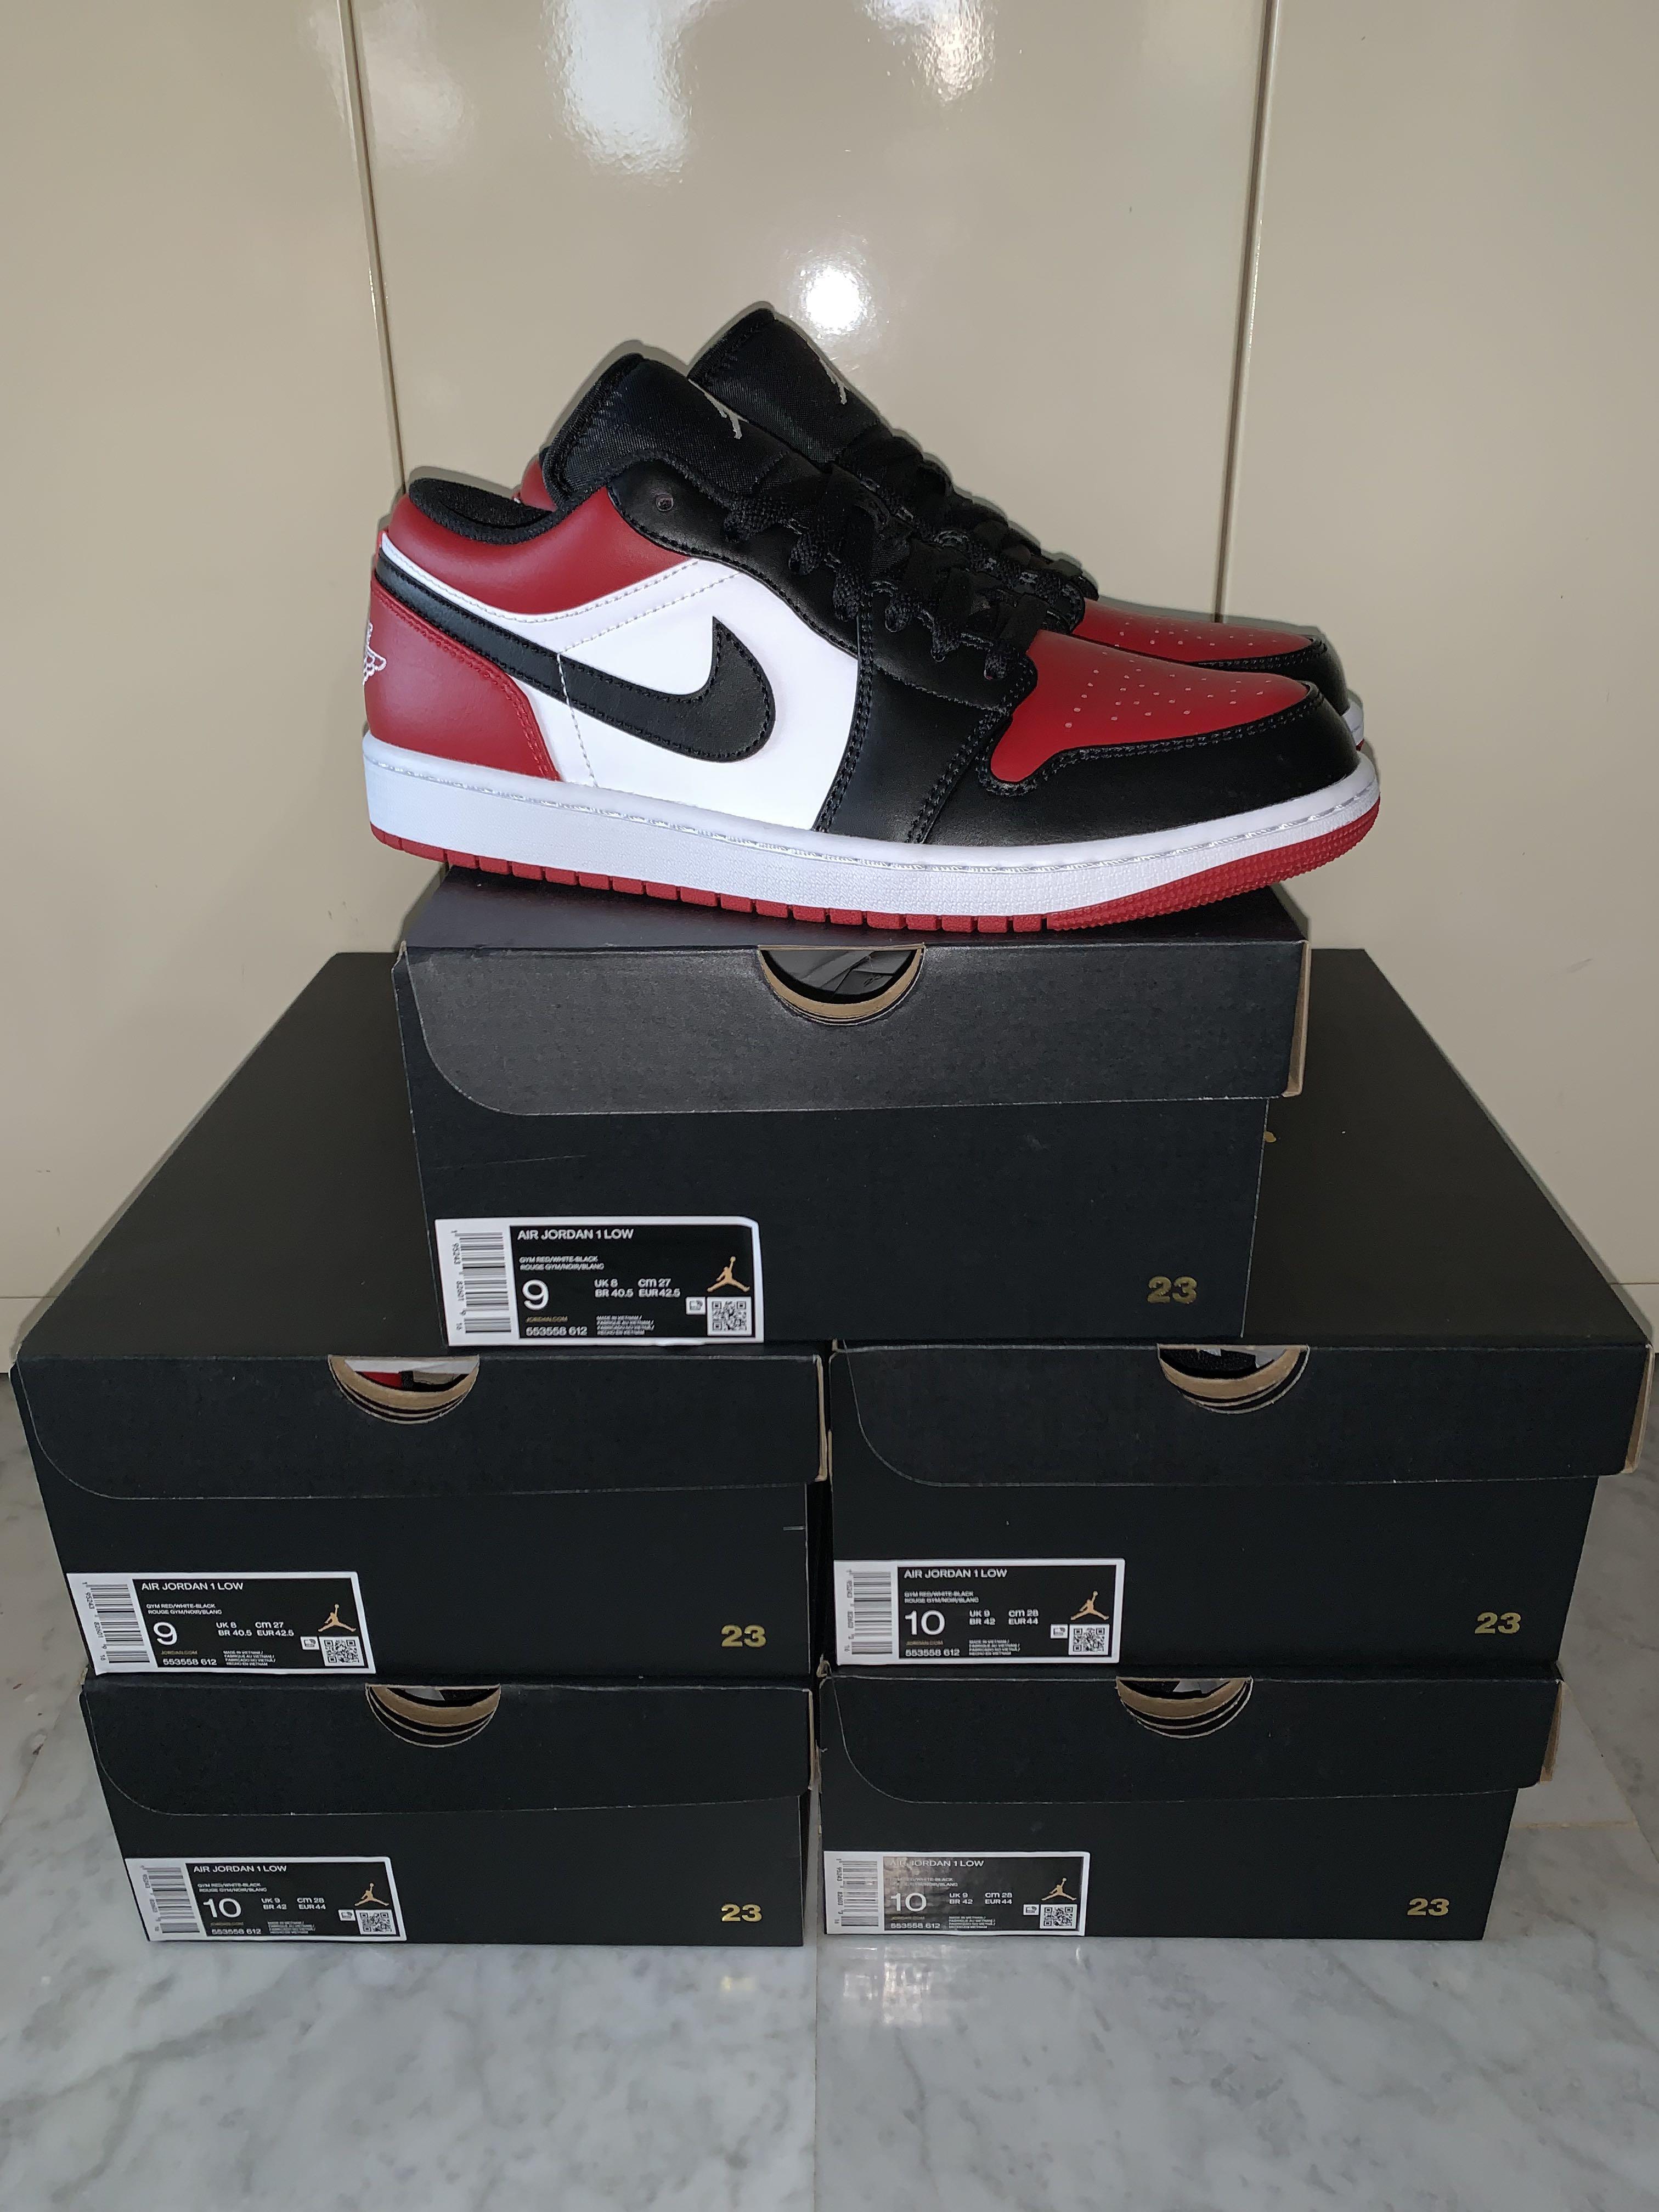 Air Jordan 1 Low 'Bred Toe' - Air Jordan - 553558 612 - gym red/black/white